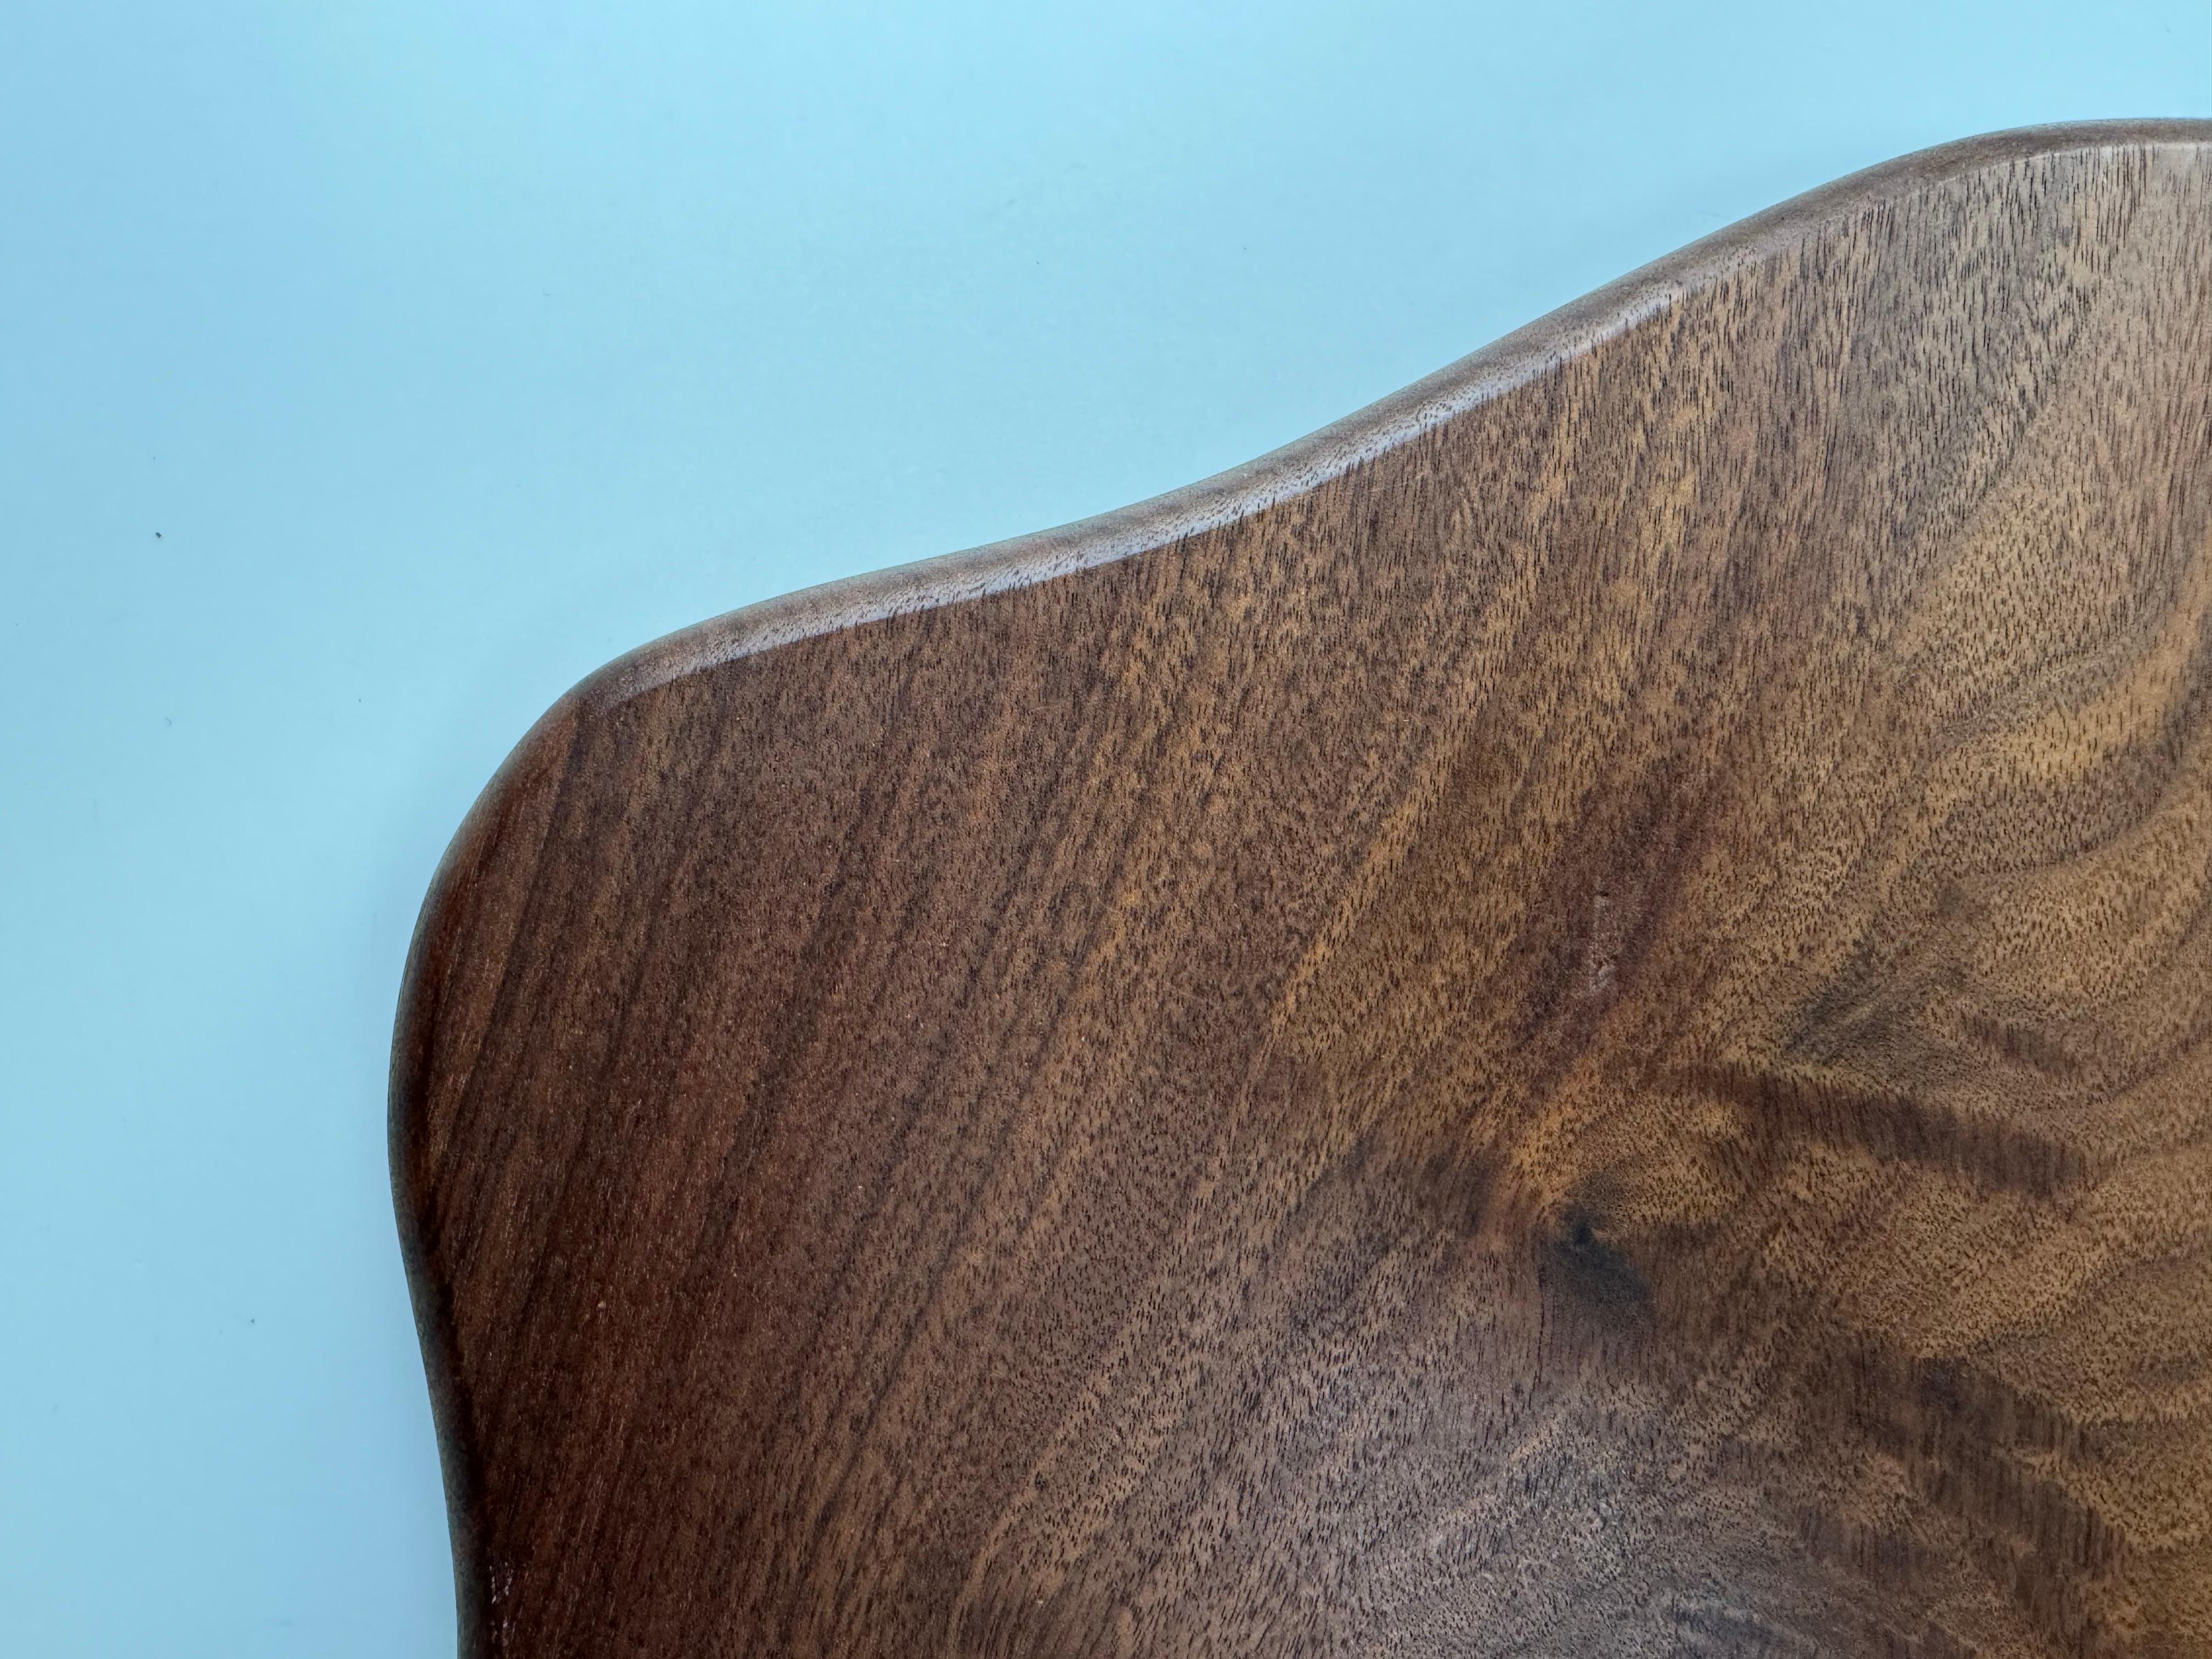 Dieses einzigartige und abstrakte Holzbrett aus amerikanischem Schwarznussholz hat eine Menge Charakter. 

Die Maserung, das Muster und die Farben dieses Holzes ergänzen die abstrakten Formen des Brettes. 

Es ist ein ideales Mittelstück für einen